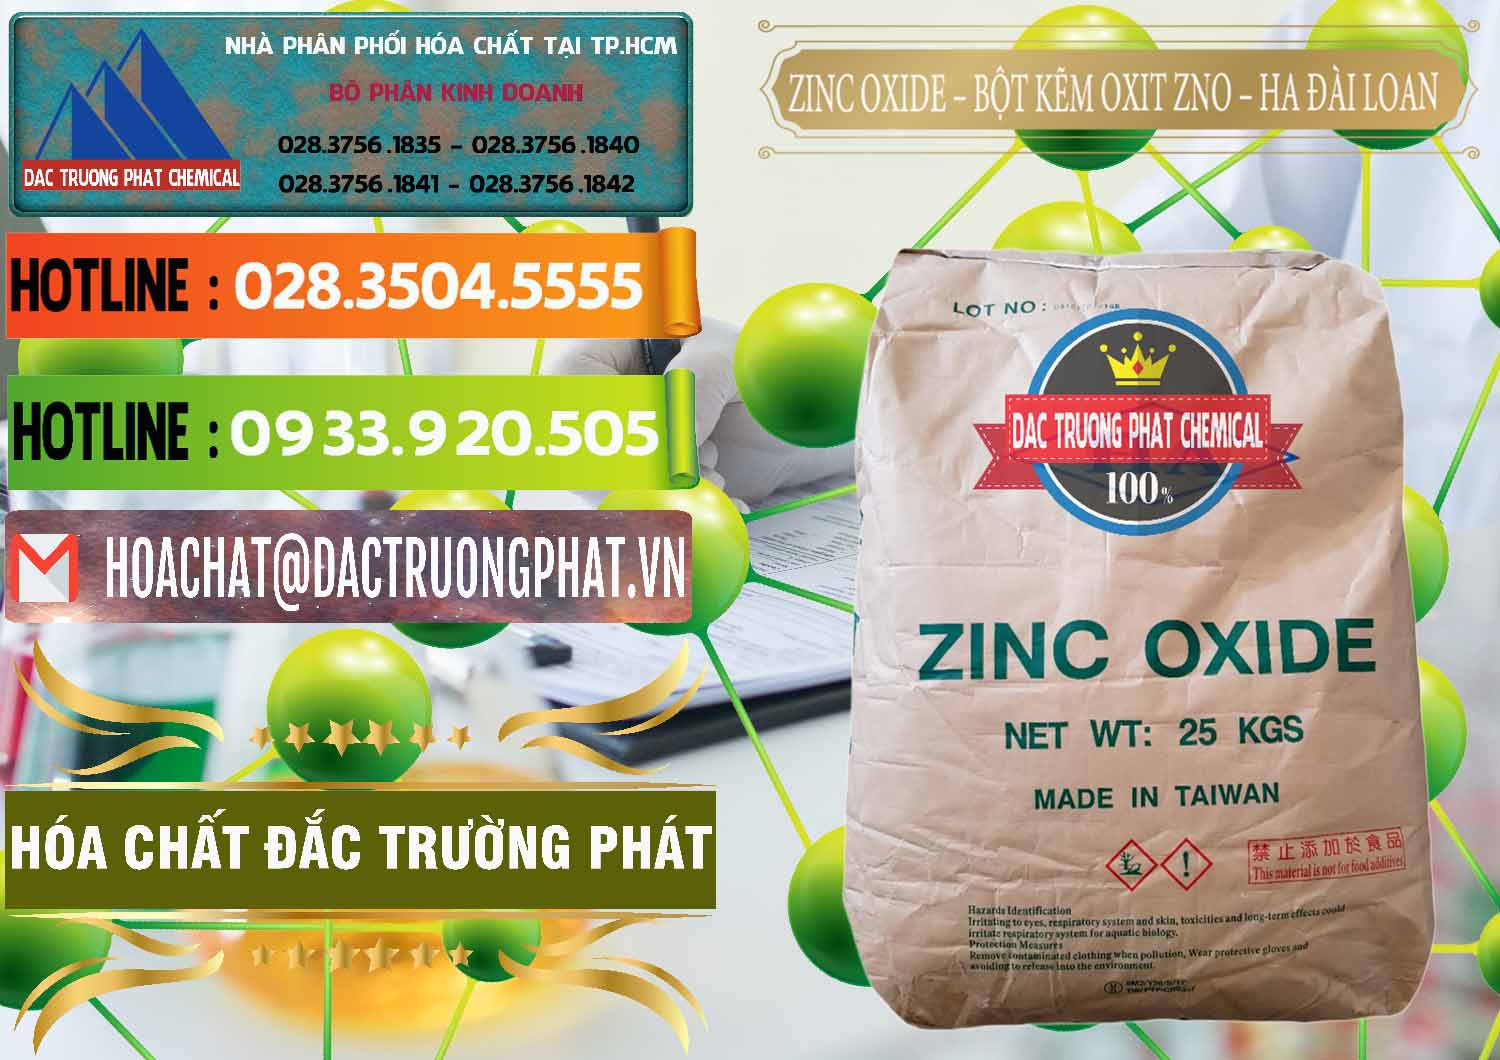 Cty chuyên cung ứng & bán Zinc Oxide - Bột Kẽm Oxit ZNO HA Đài Loan Taiwan - 0180 - Cty phân phối & nhập khẩu hóa chất tại TP.HCM - cungcaphoachat.com.vn